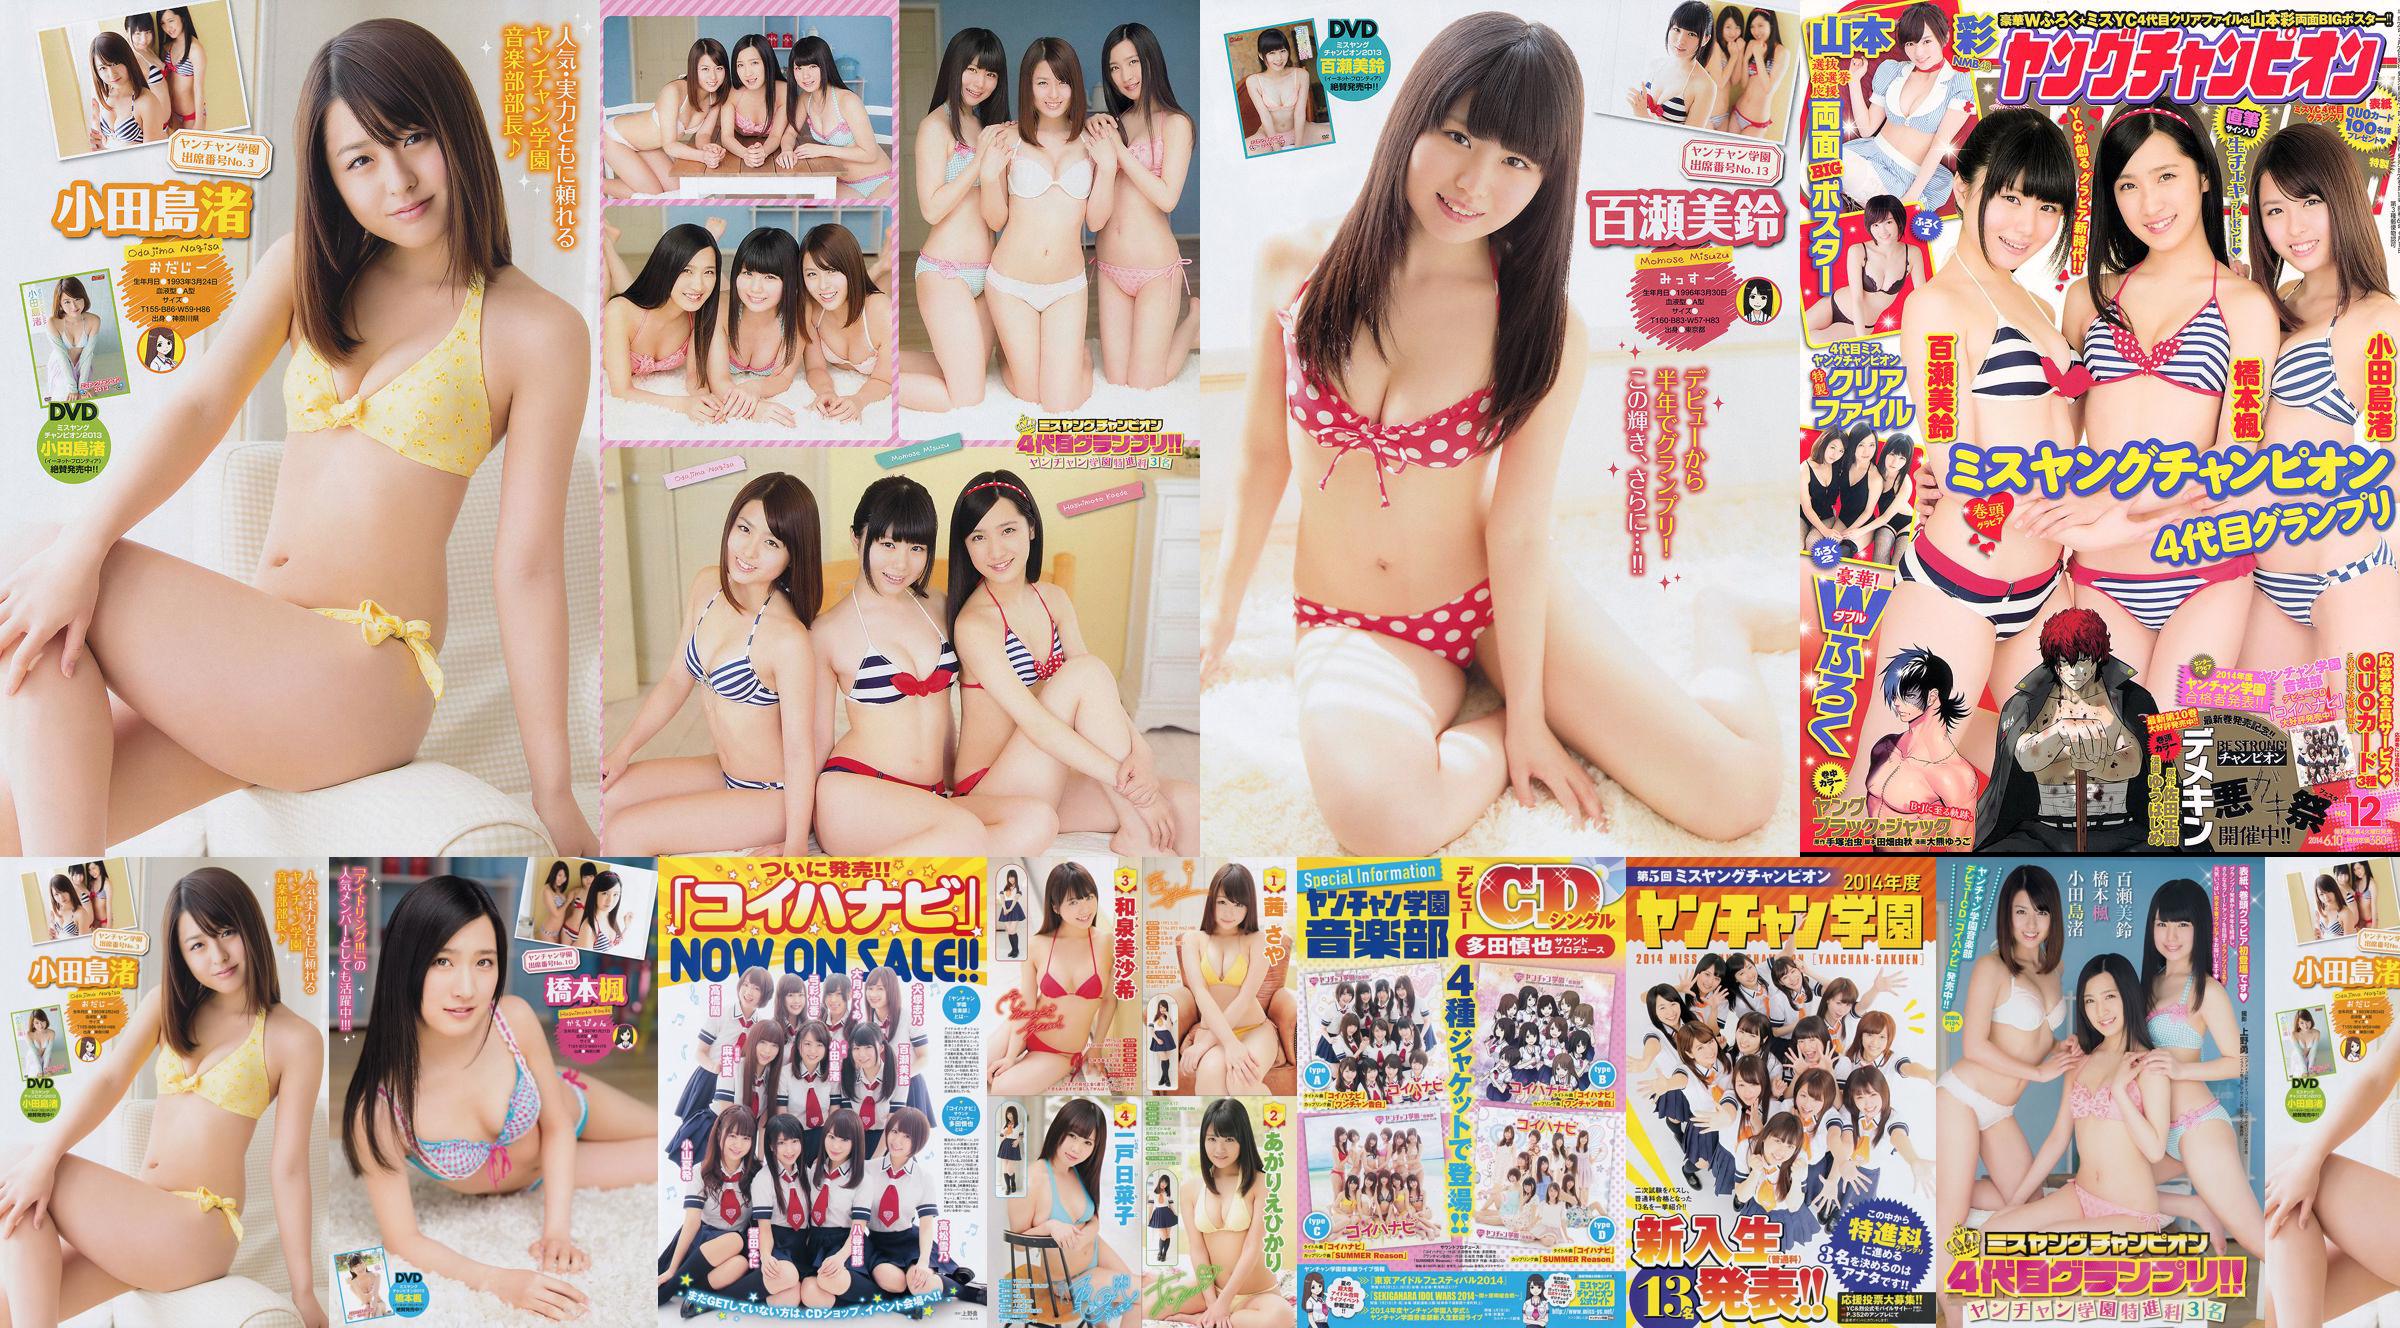 [Junger Champion] Nagisa Odajima Kaede Hashimoto Misuzu Momose 2014 Nr. 12 Foto No.aab4f0 Seite 4